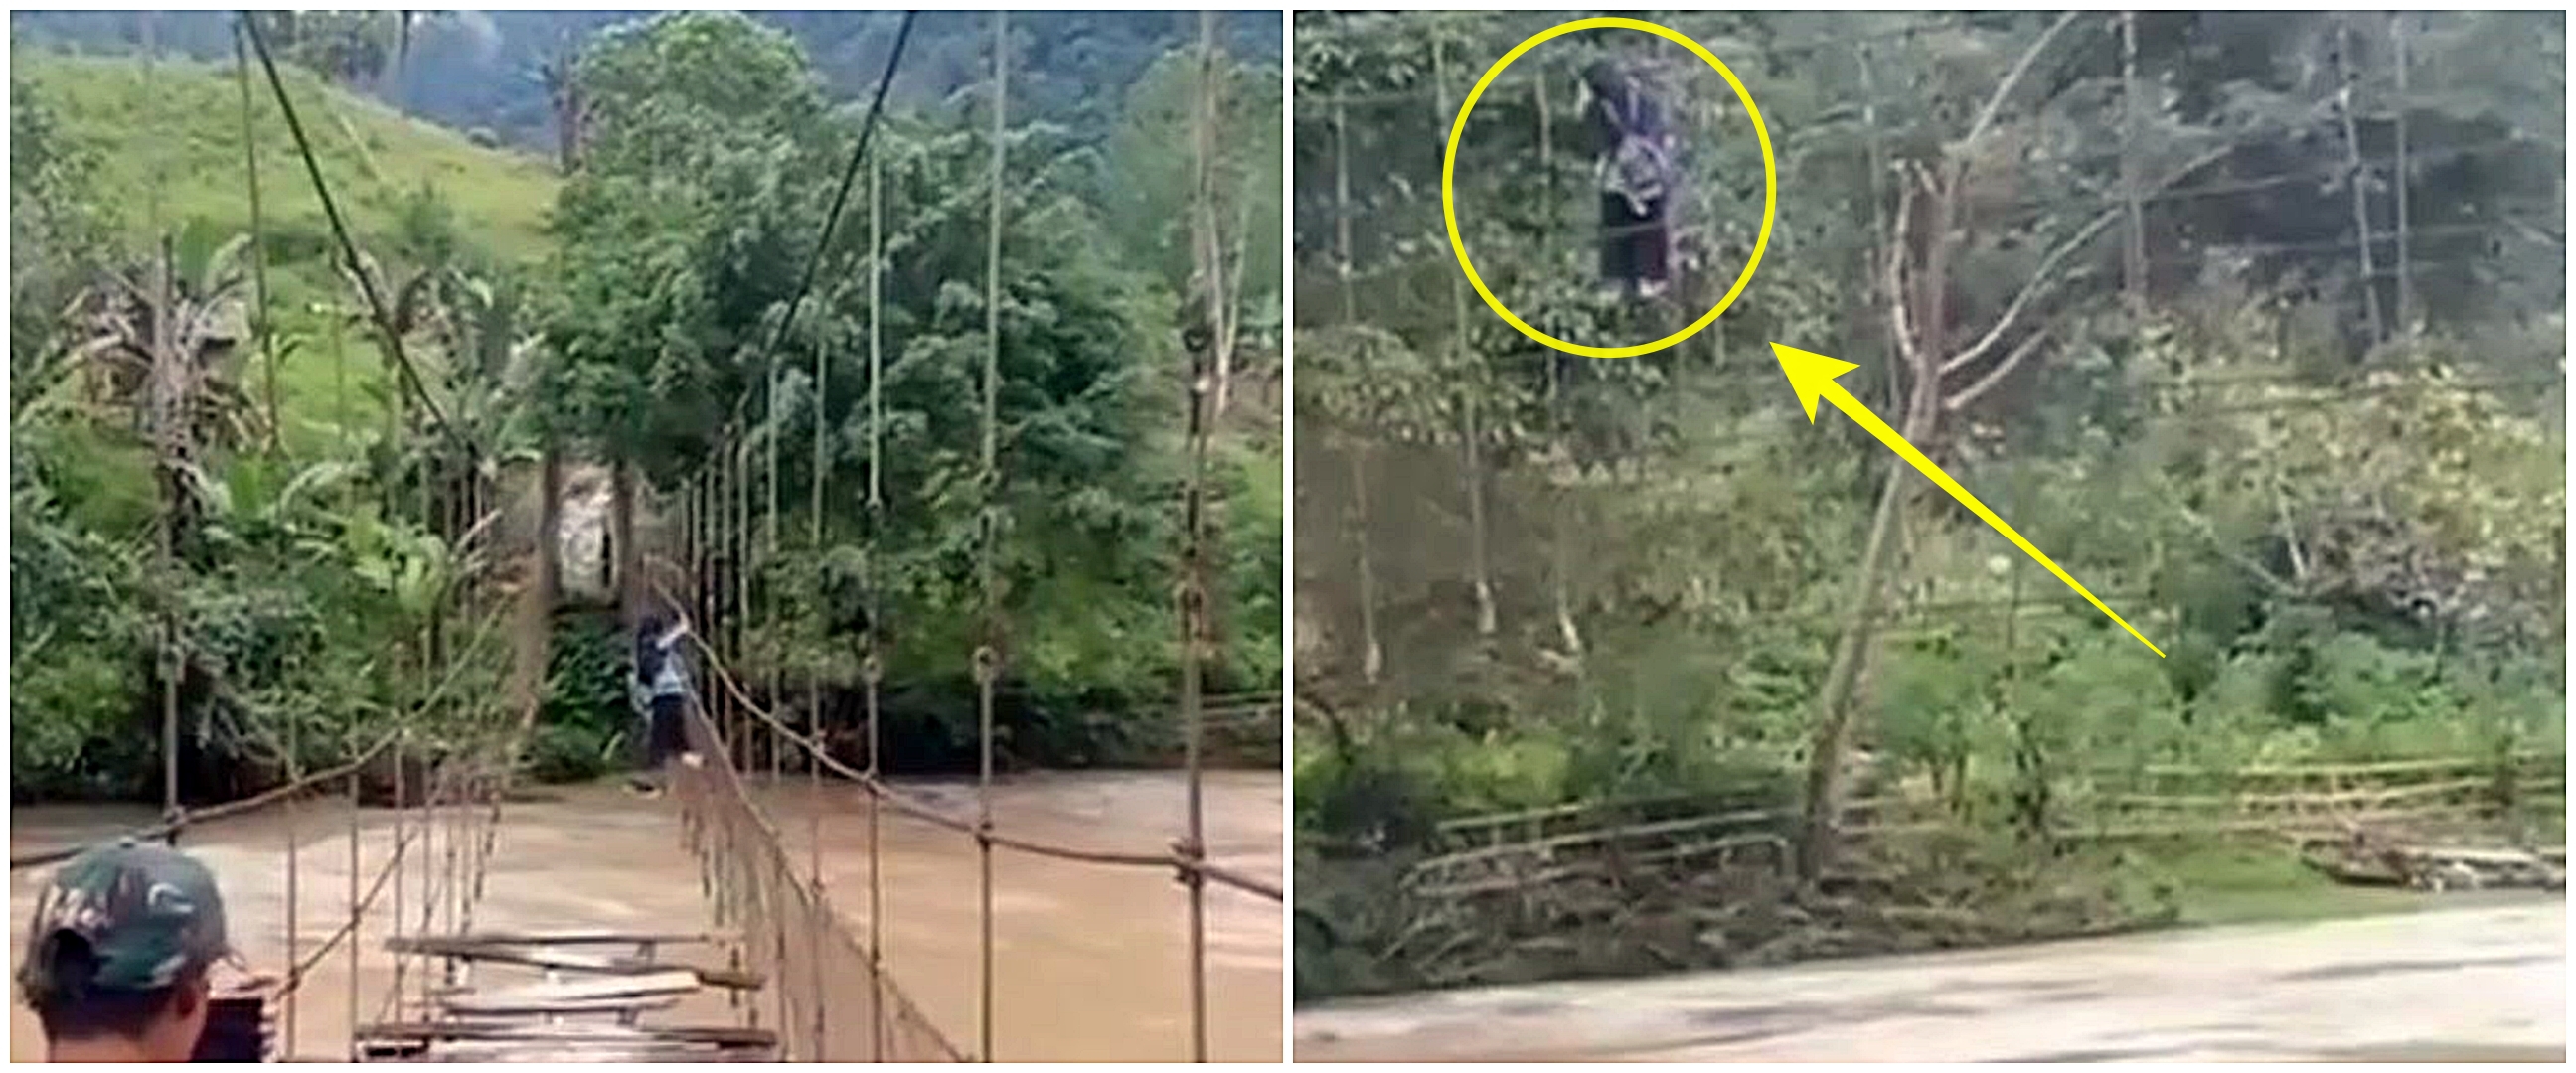 Viral pelajar nekat seberangi sungai berpegangan tali jembatan rusak